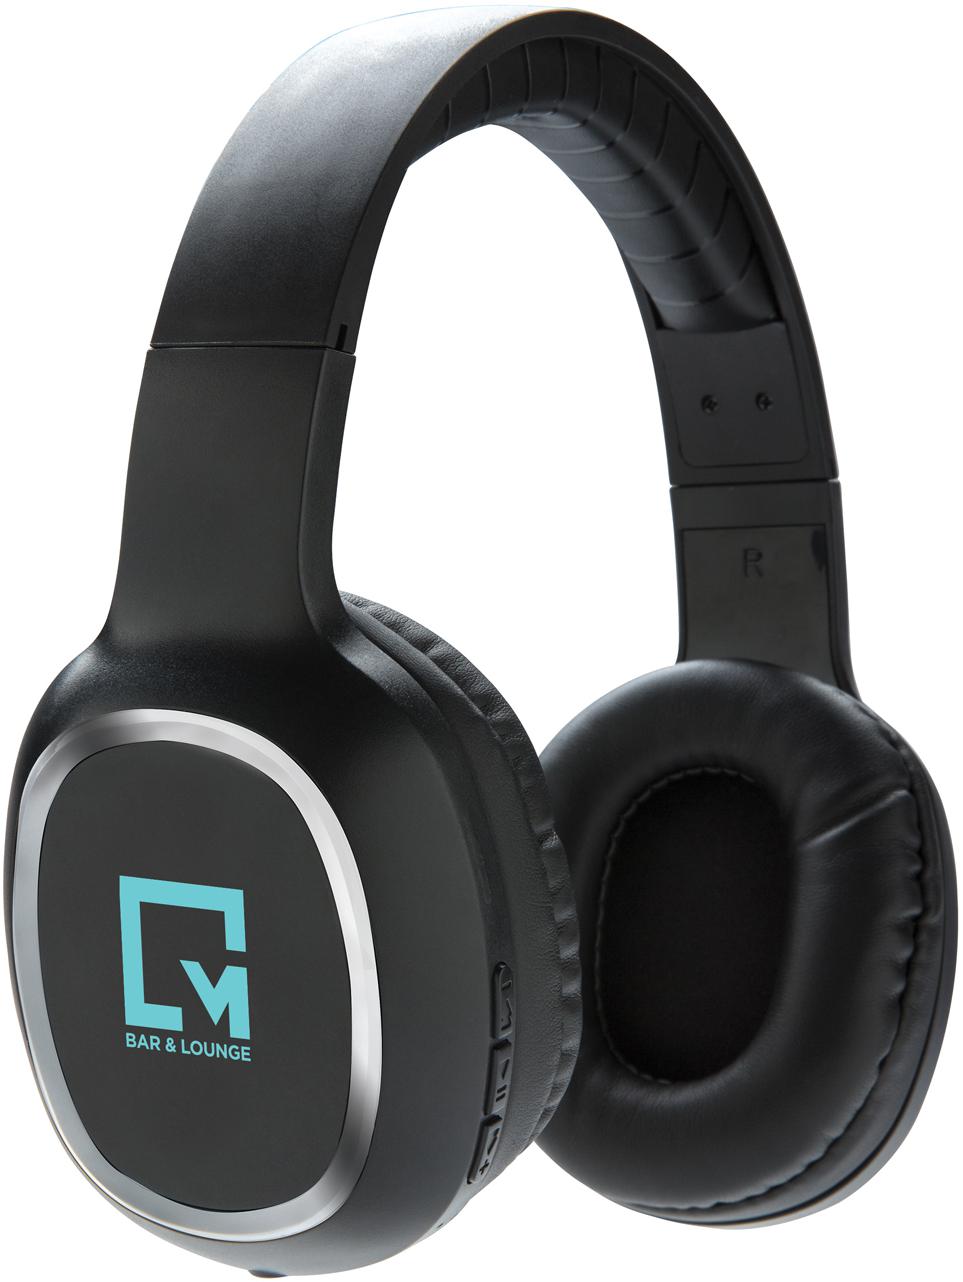 Black headset